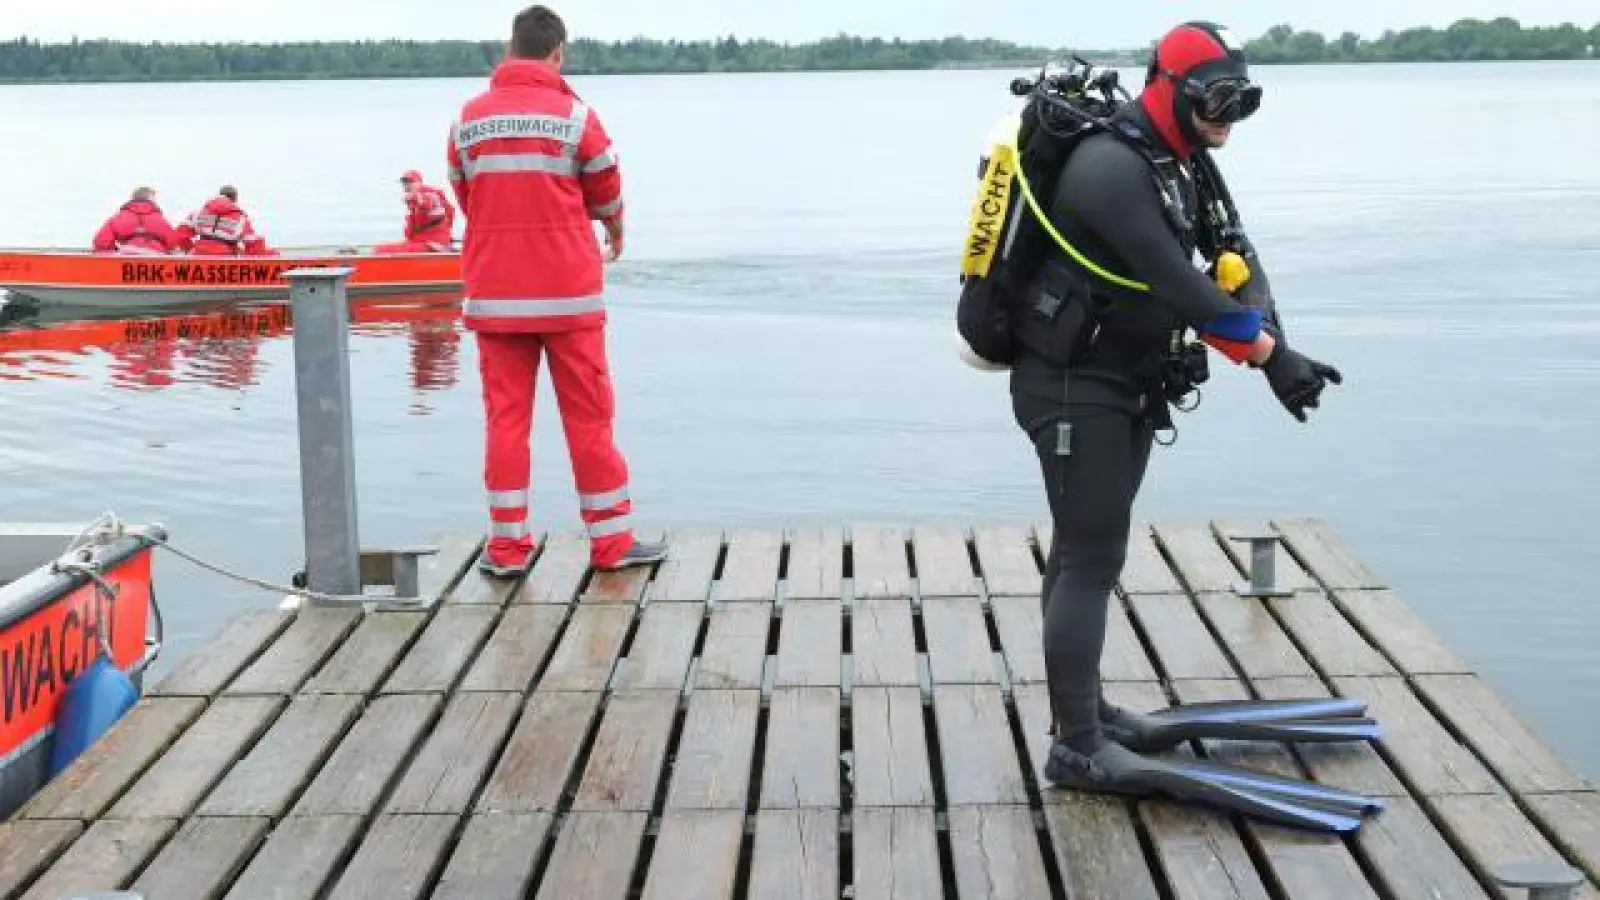 Taucher der Wasserwacht brauchte es zwar nicht, dafür aber einen mit einem speziellen Wasserrettungsanzug ausgerüsteten Feuerwehrmann, um den 29-Jährigen aus der Paar zu retten.